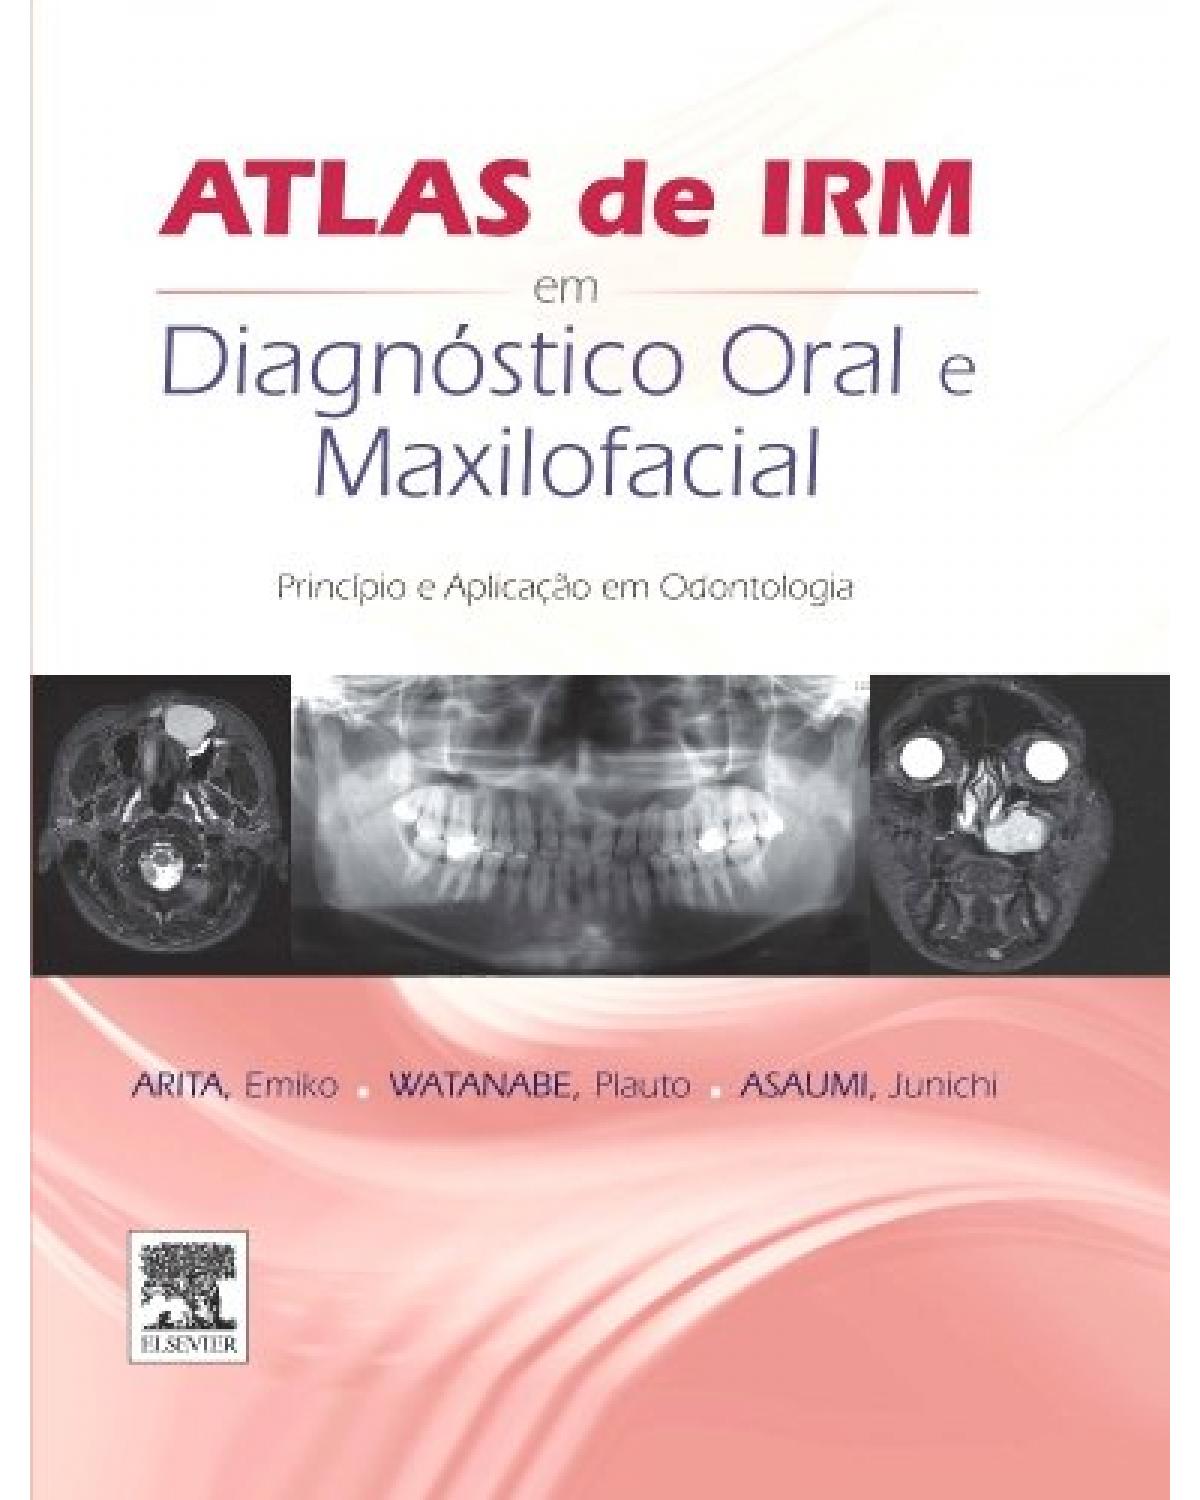 Atlas de IRM em diagnóstico oral e maxilofacial - 1ª Edição | 2015